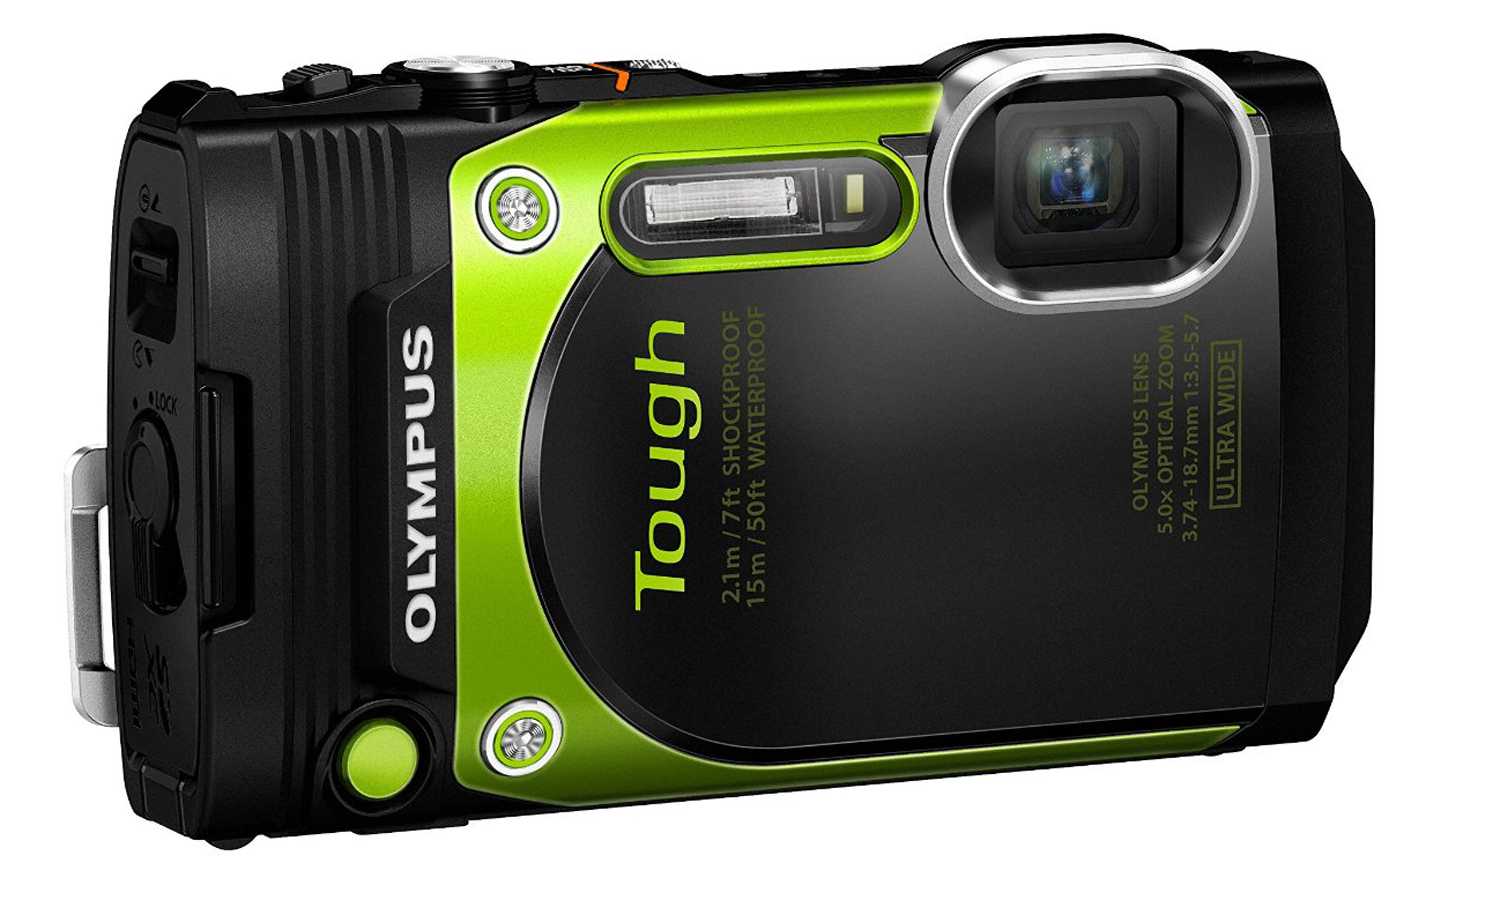 Olympus tough tg-630 (красный) - купить , скидки, цена, отзывы, обзор, характеристики - фотоаппараты цифровые